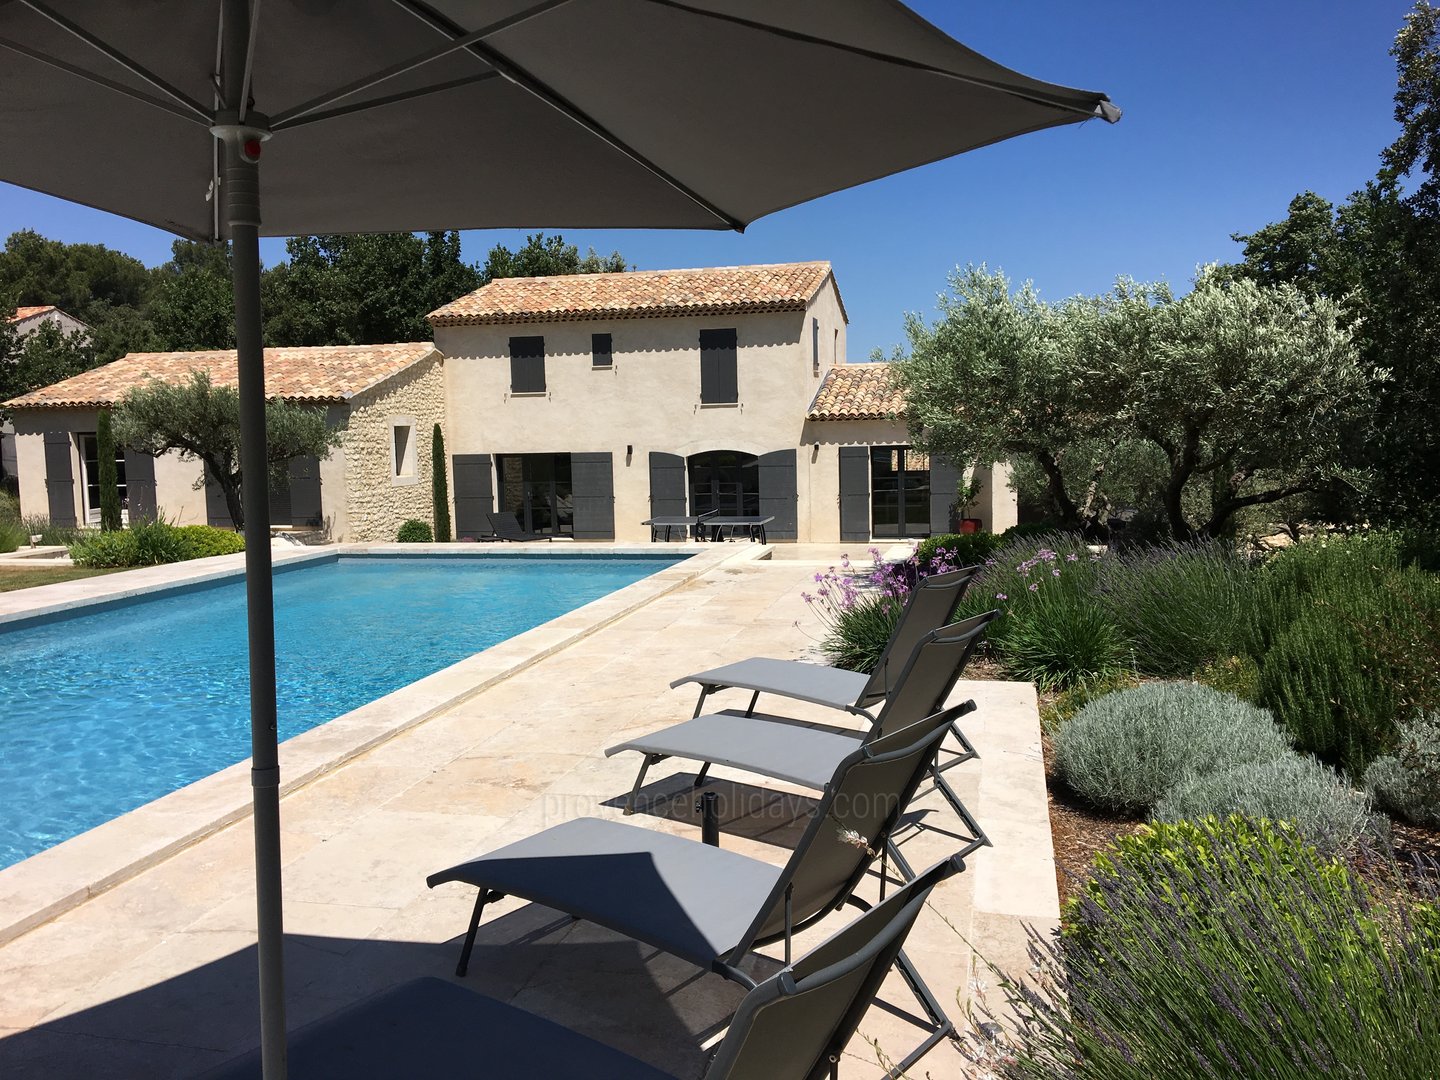 30 - Le Mas Provençal: Villa: Pool